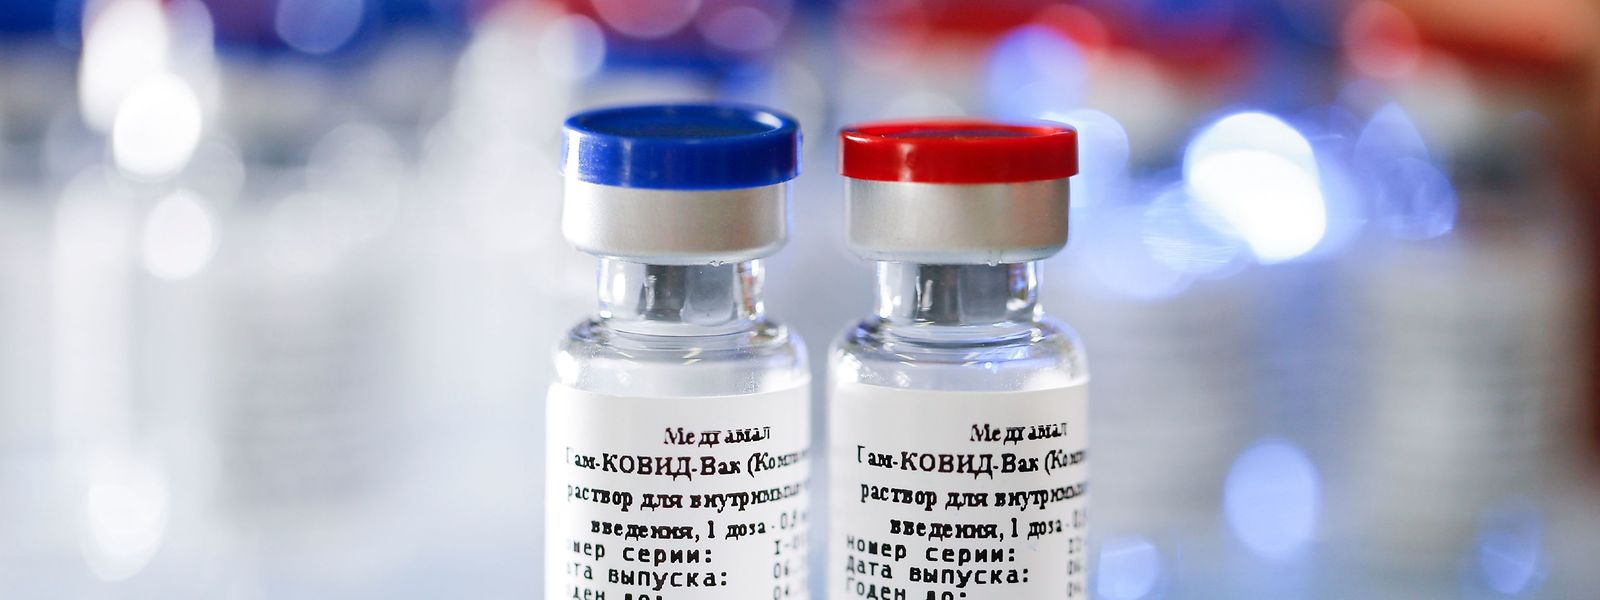 Der erste Impfstoff gegen Covid-19, der am Dienstag von Russland zugelassen wurde, wurde noch nicht in großangelegten klinischen Studien gestestet.